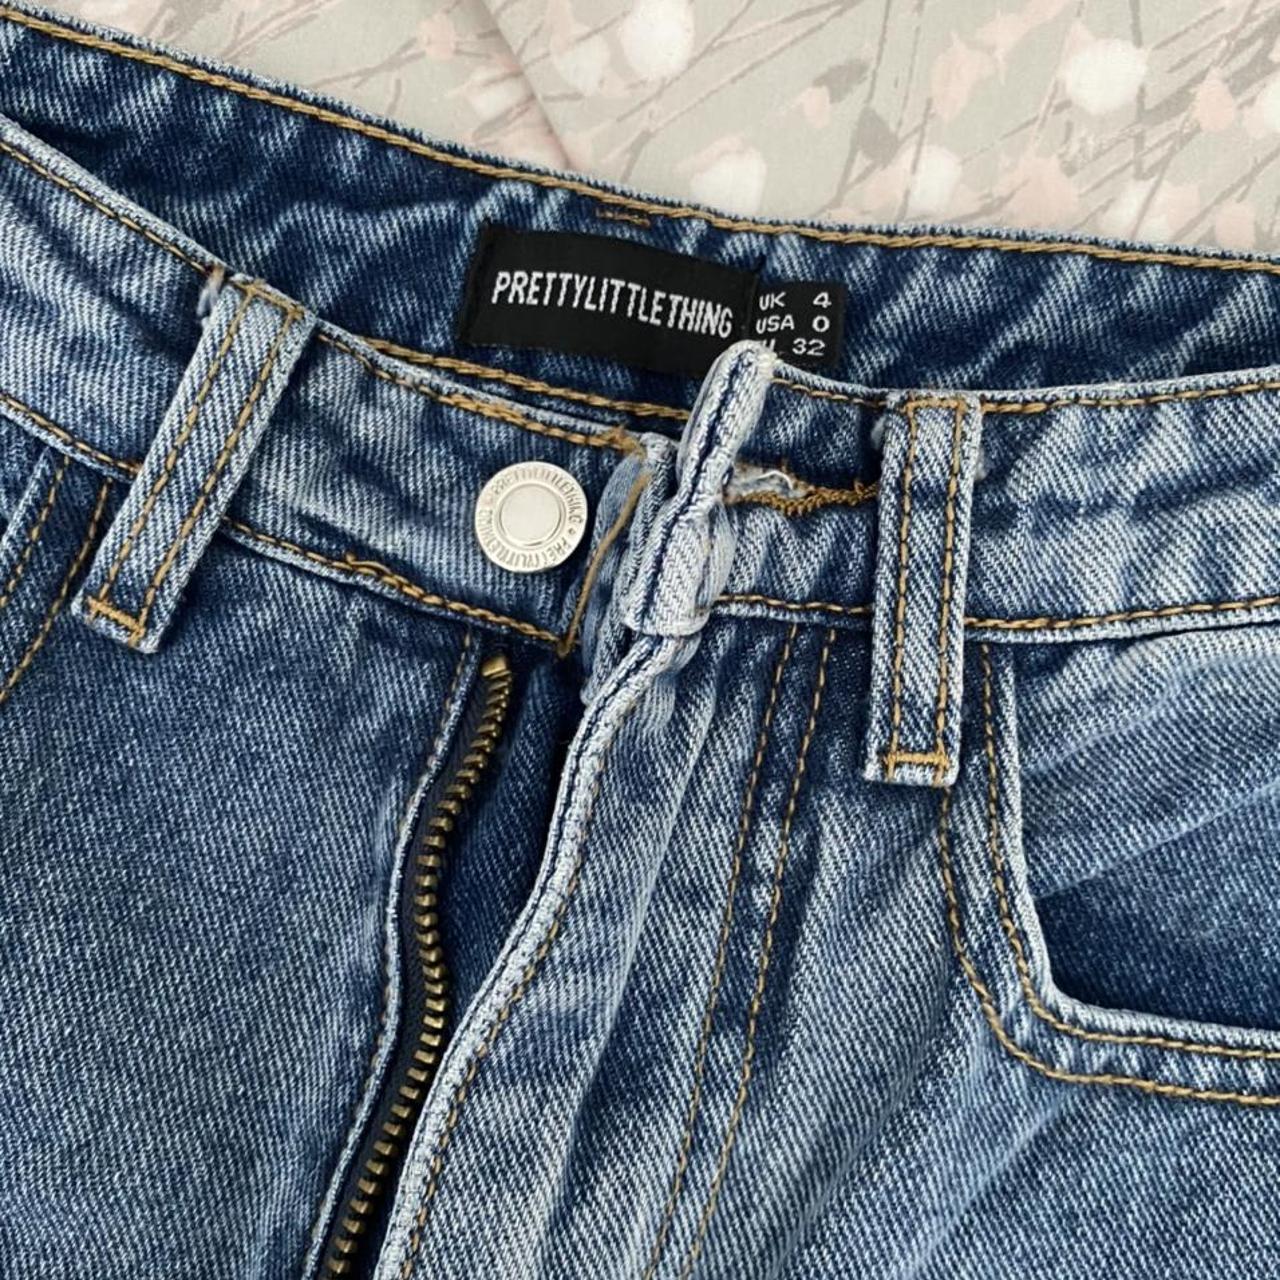 PrettyLittleThing Women's Blue Jeans | Depop